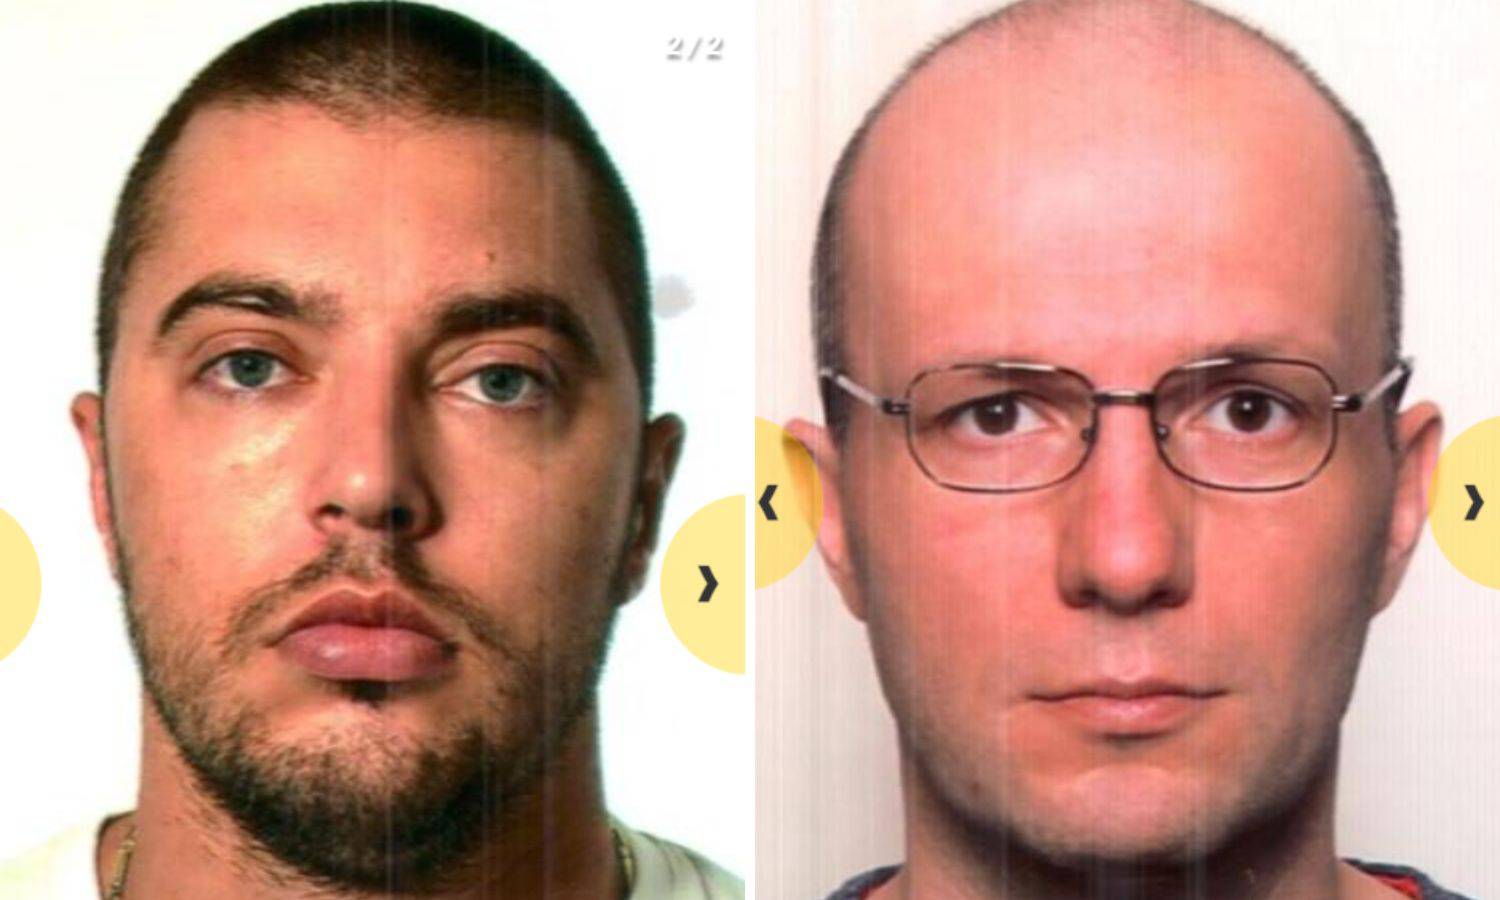 Novi hrvatski kriminalci završili su na tjeralici Europola: 'Oni su opasni, naoružani i nasilni!'